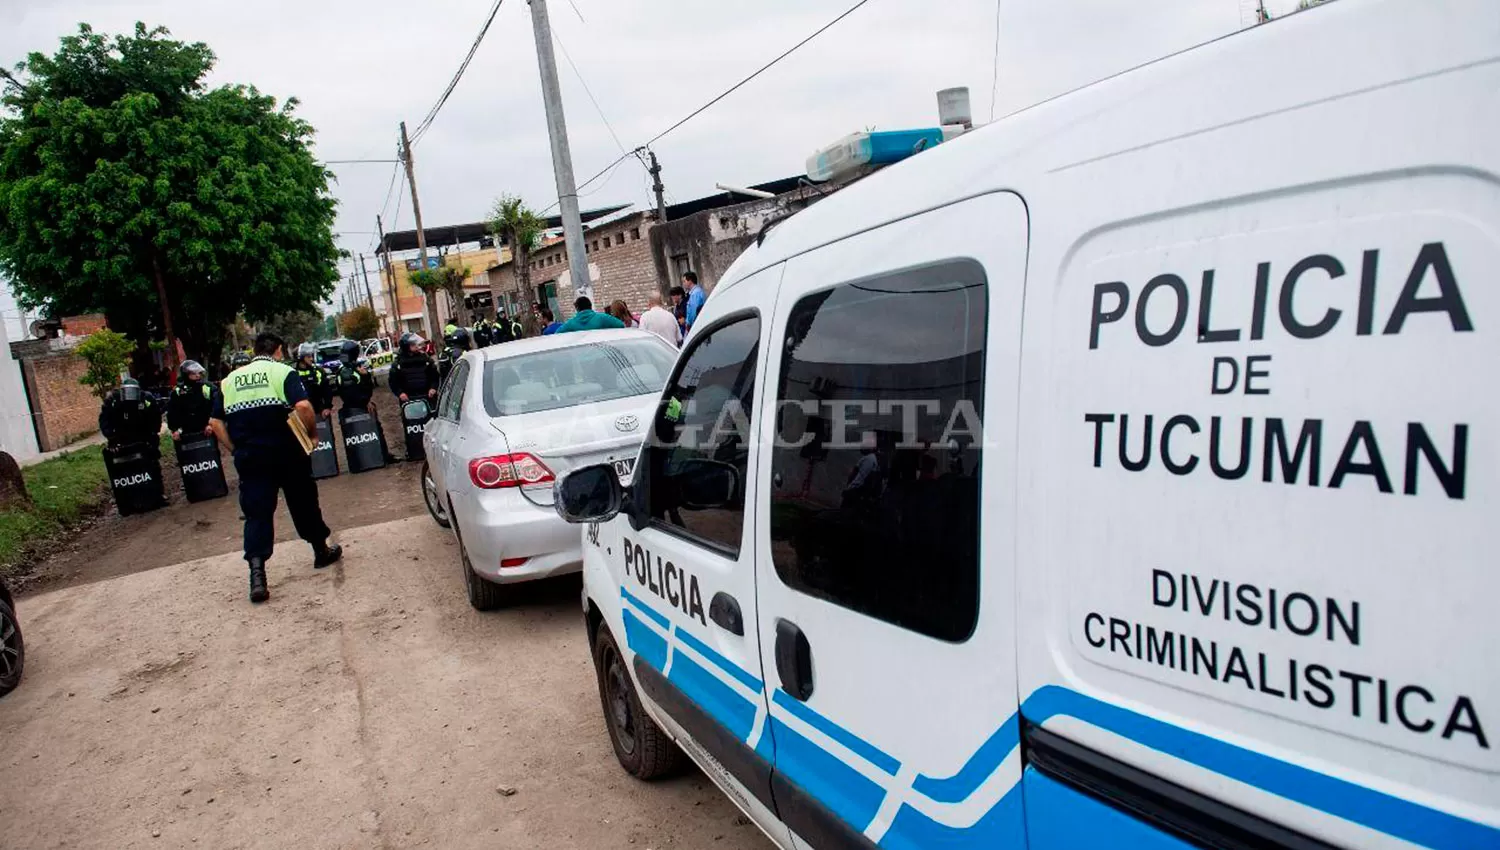 El año pasado se registraron 10 femicidios en Tucumán, según el estudio. LA GACETA/FOTO DE JORGE OLMOS SGROSSO